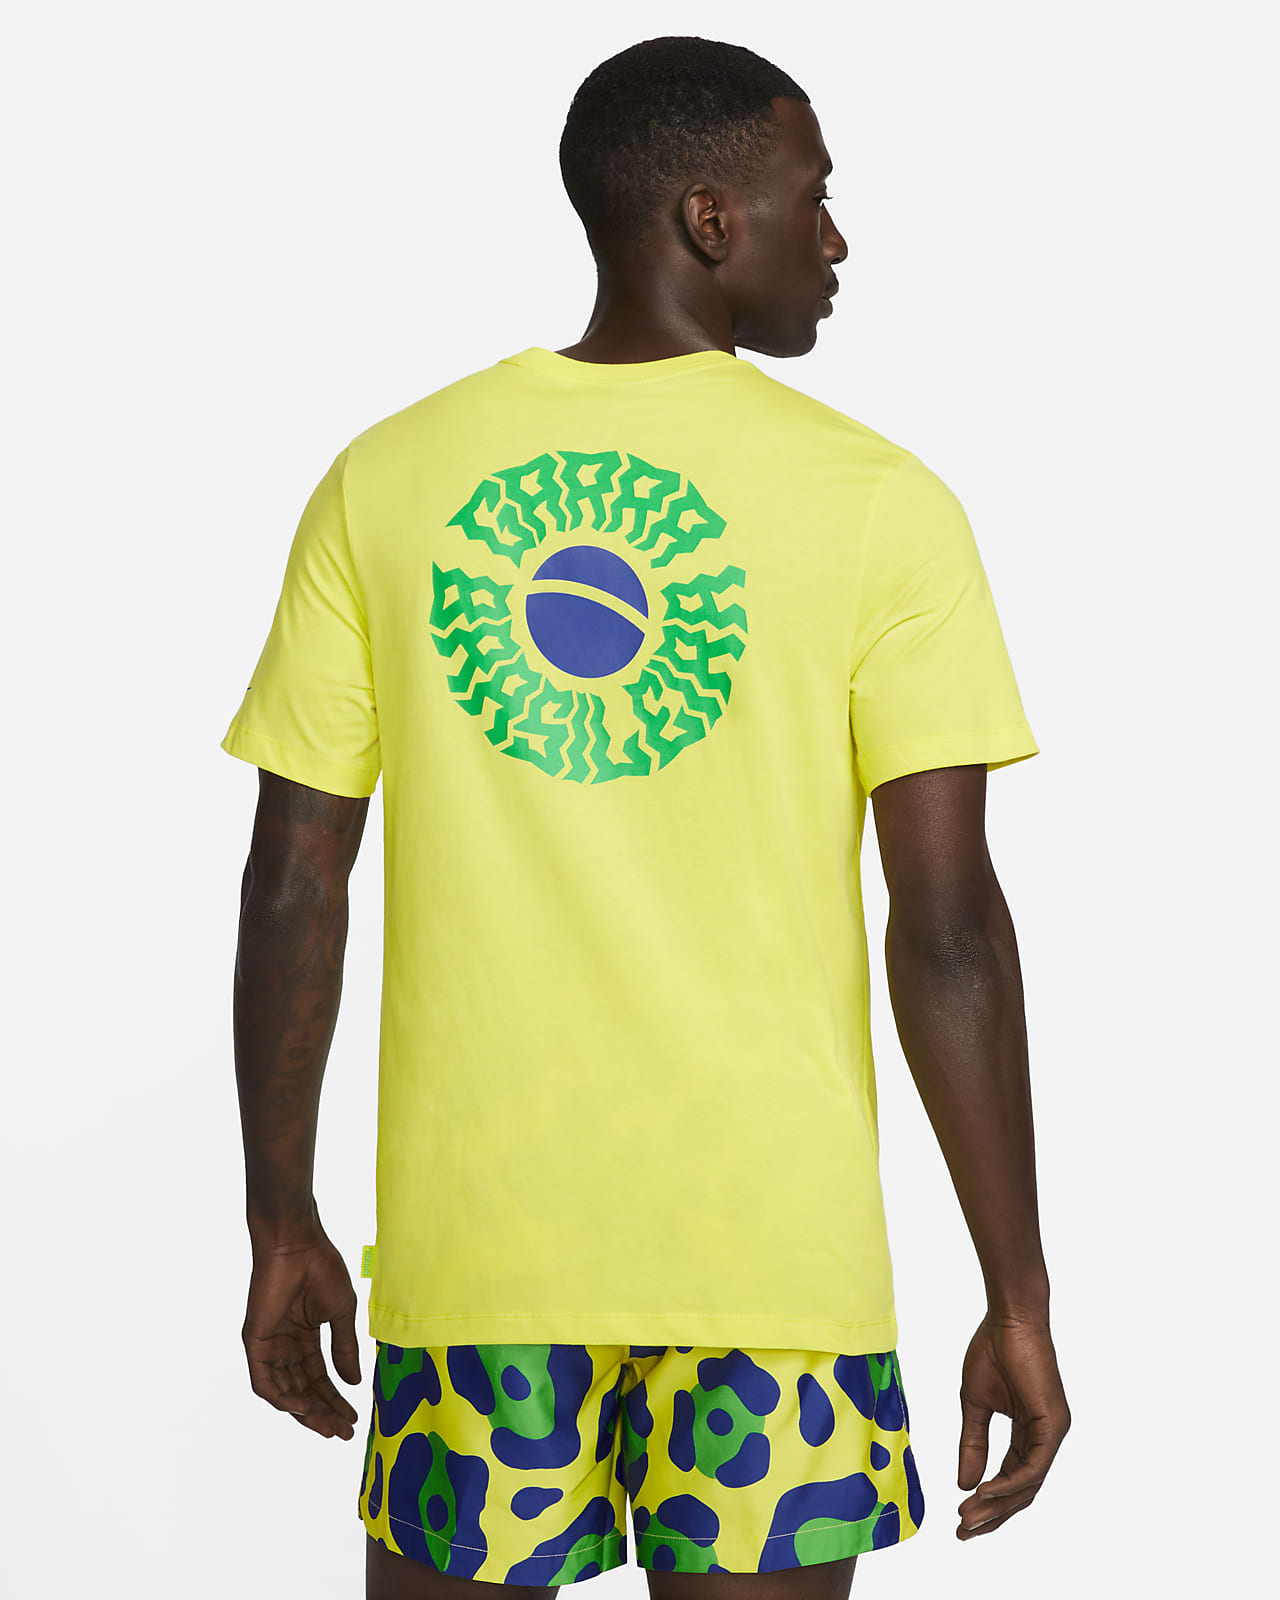 Official BNWT 2020 2021 Brazil Nike home football shirt Men's Medium